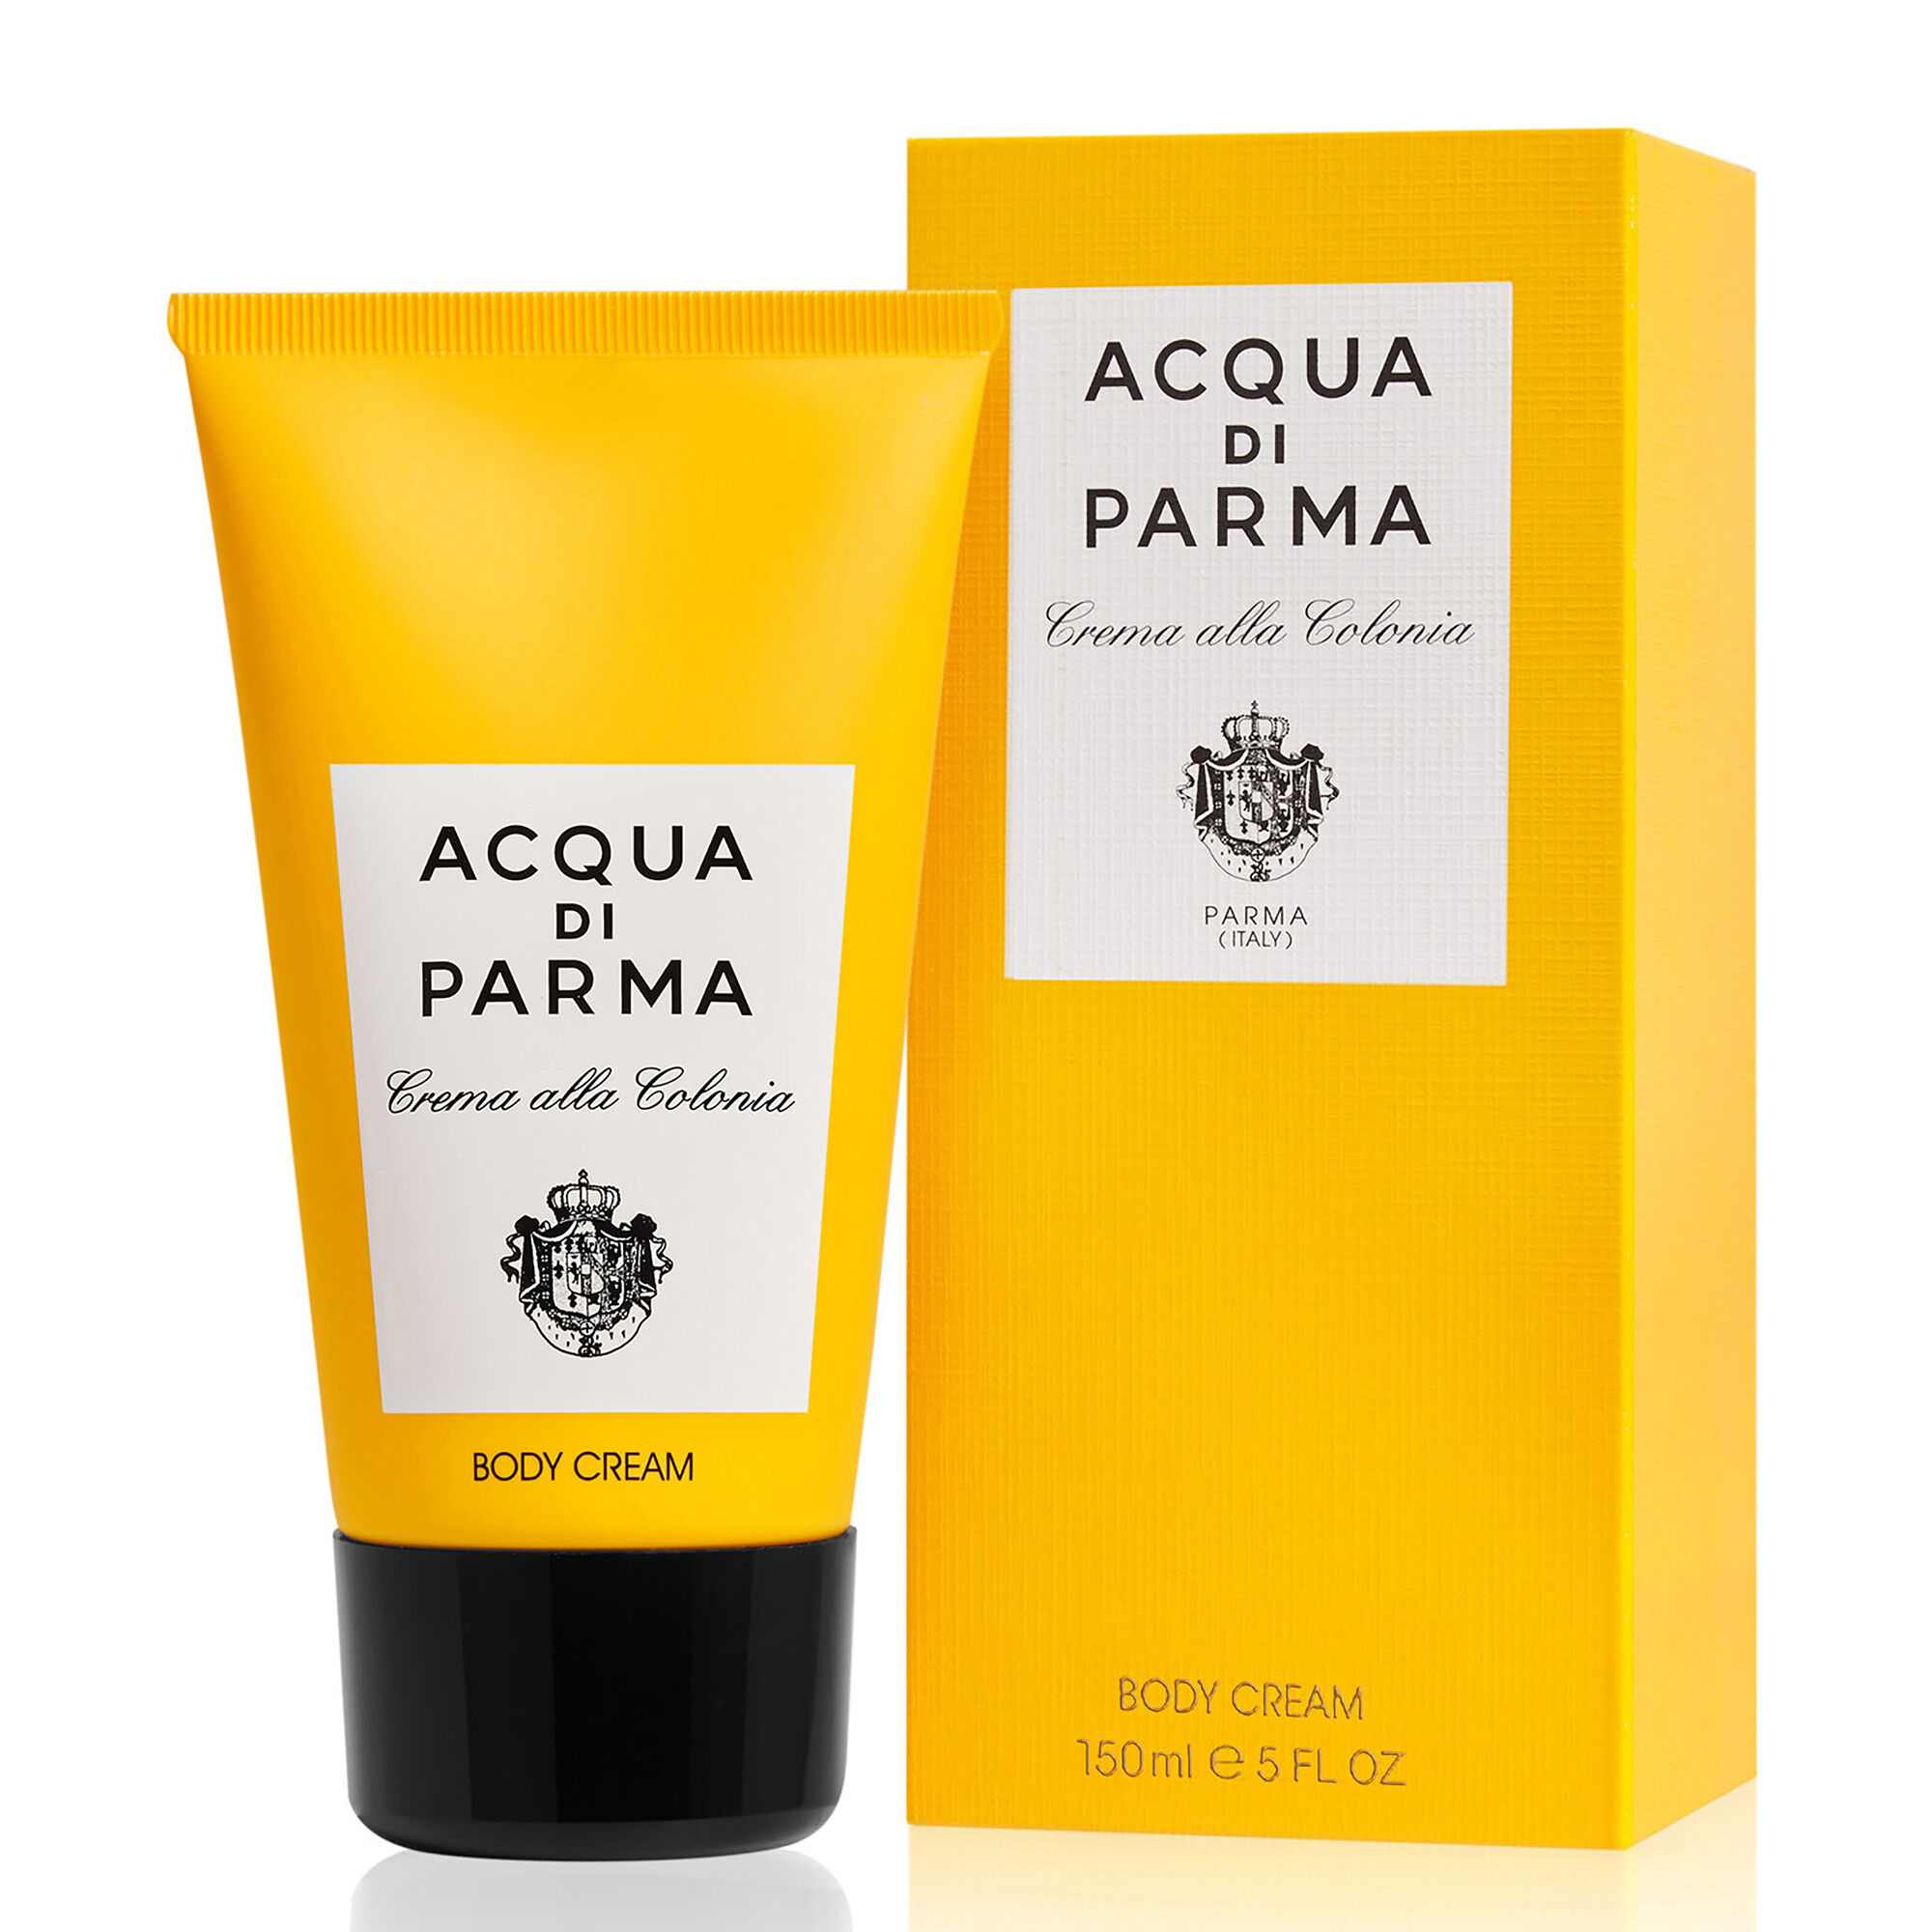 Body cream BODY CREAM - Acqua di Parma